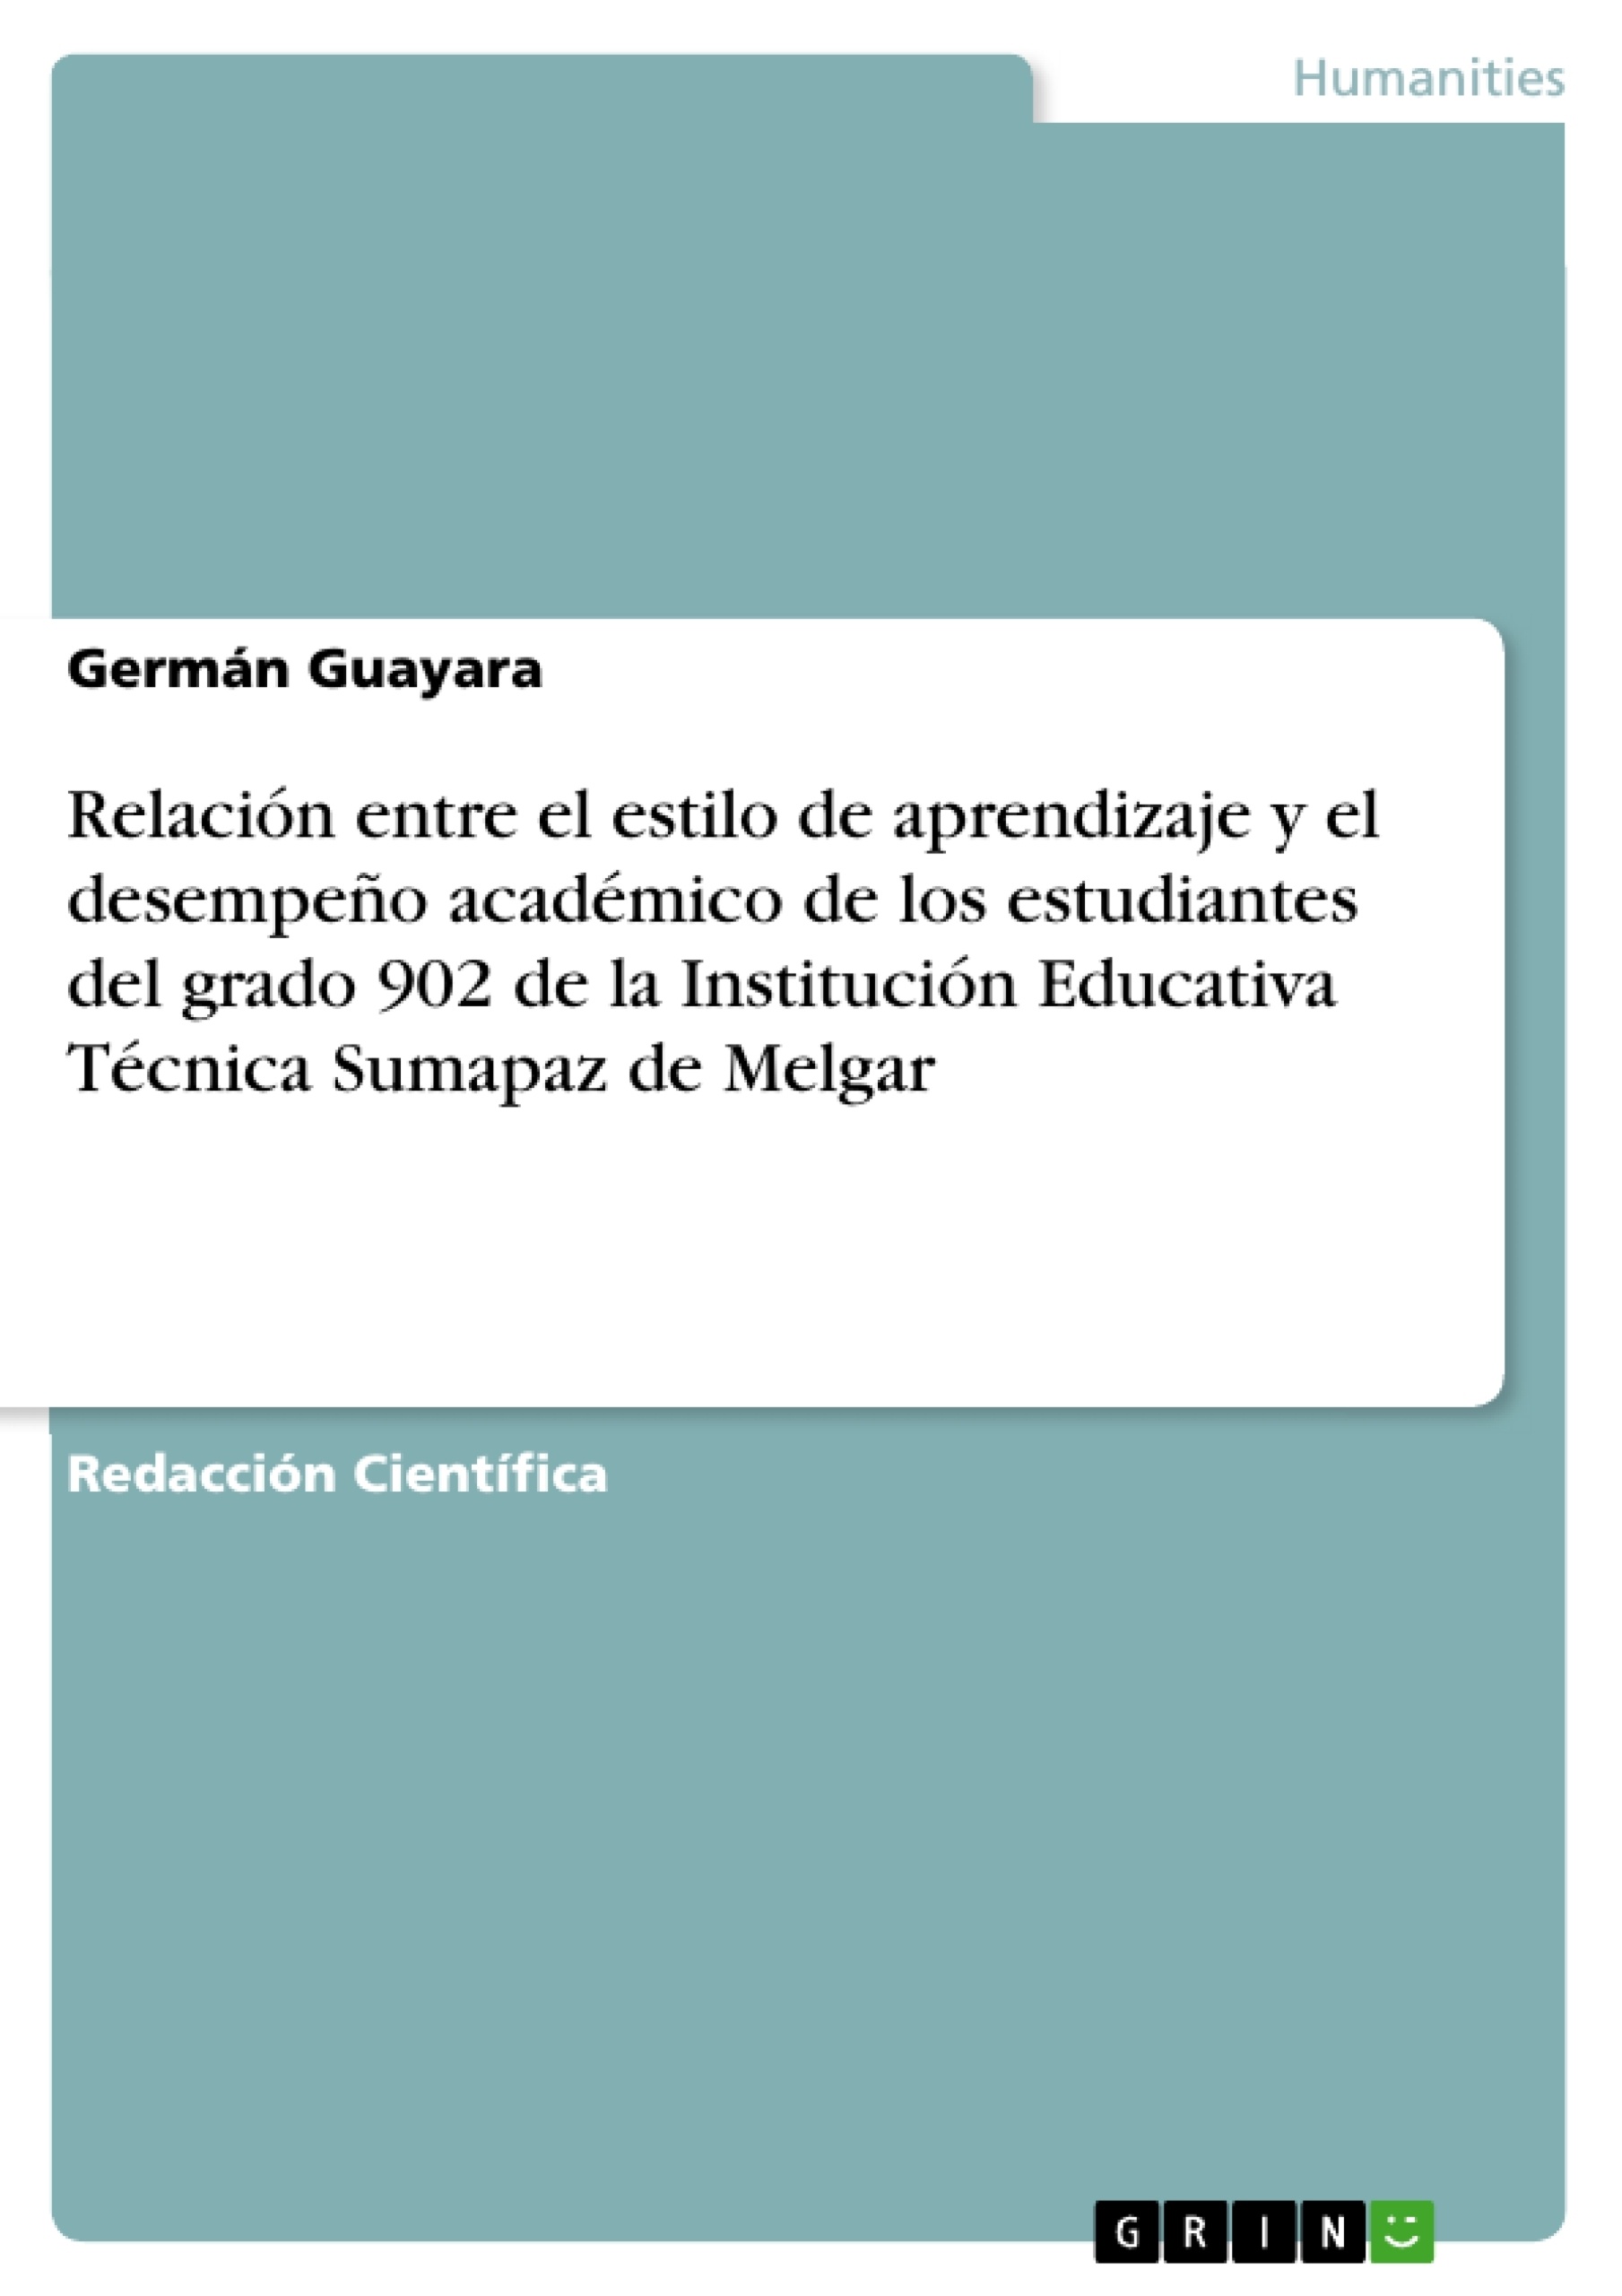 Titel: Relación entre el estilo de aprendizaje y el desempeño académico de los estudiantes del grado 902 de la Institución Educativa Técnica Sumapaz de Melgar